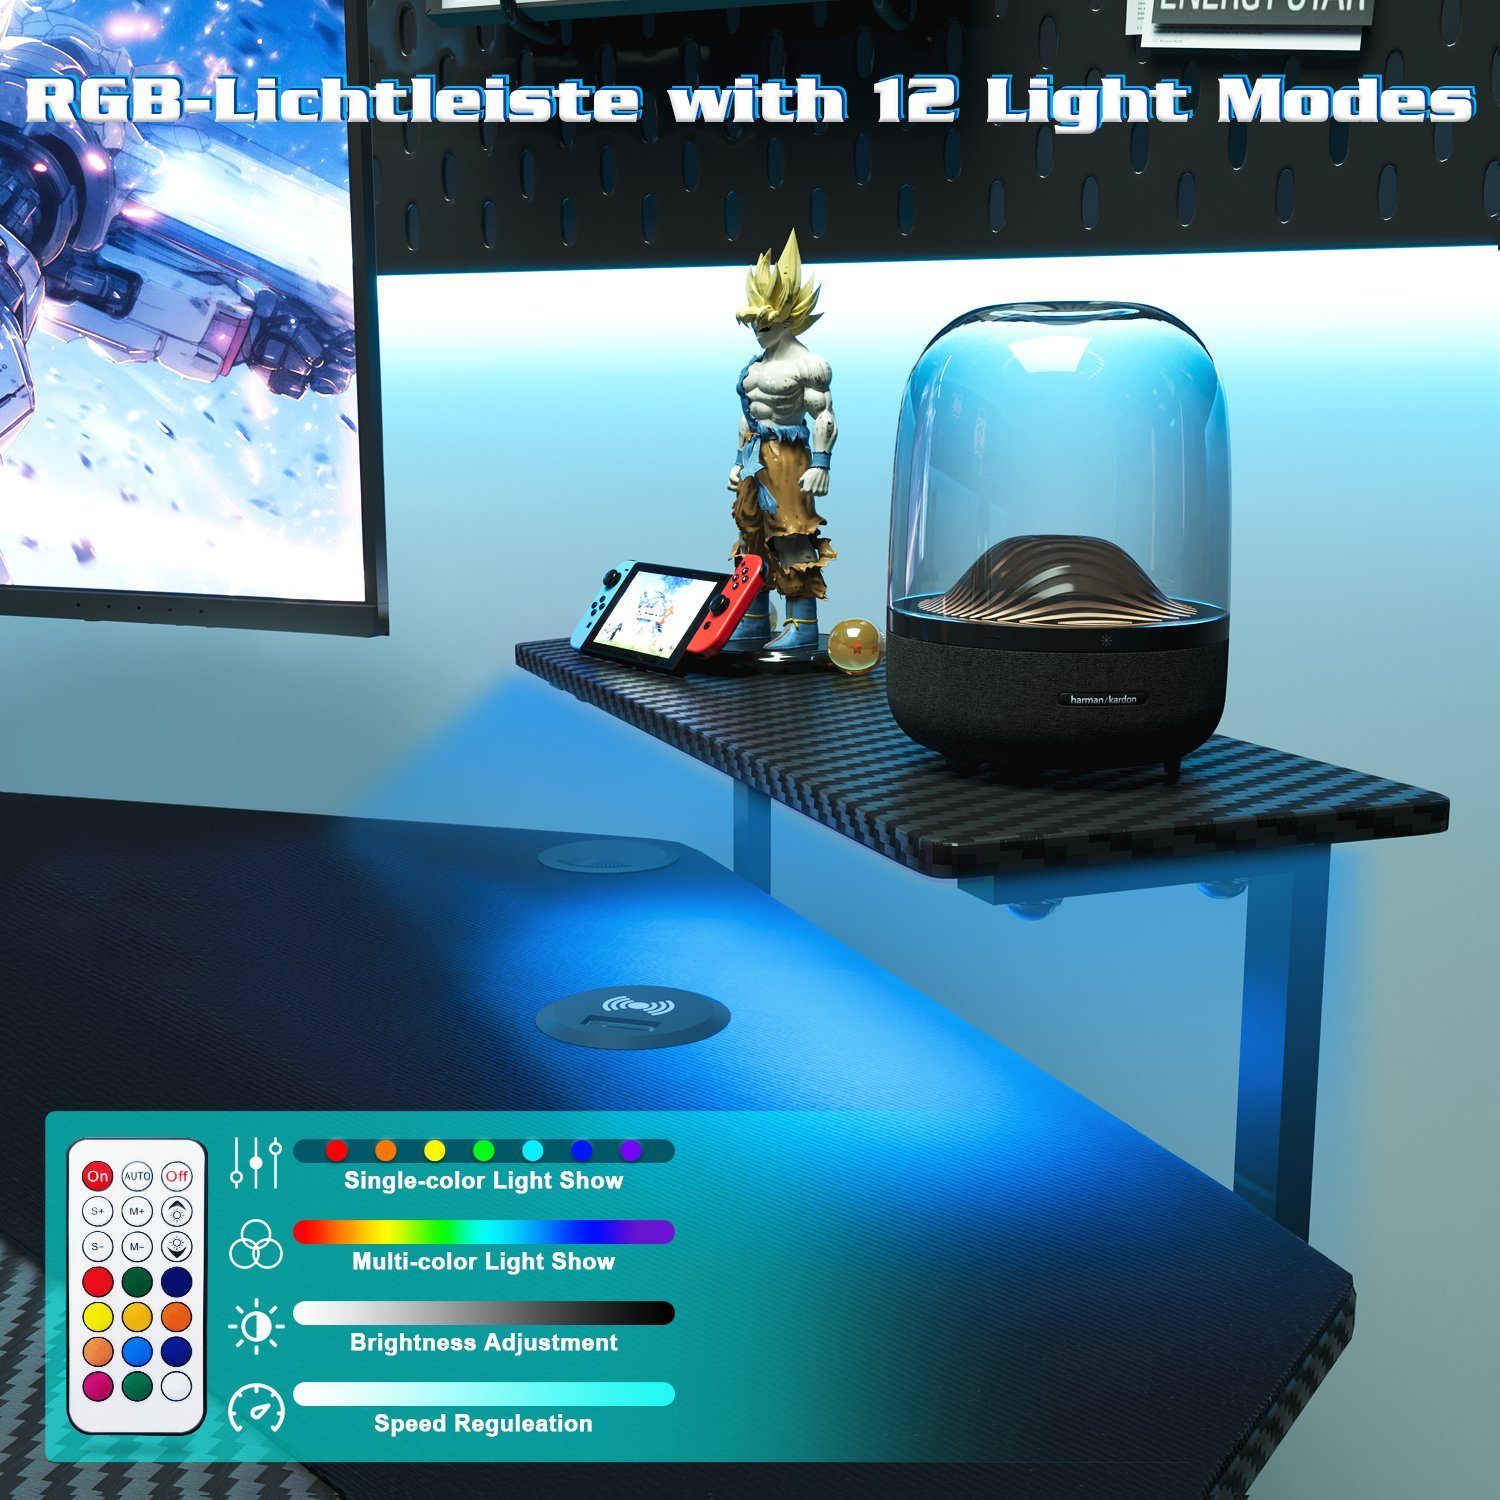 mit Computertisch 180cm mit Gaming HOMALL Tisch Gamingtisch Tastaturablage LED